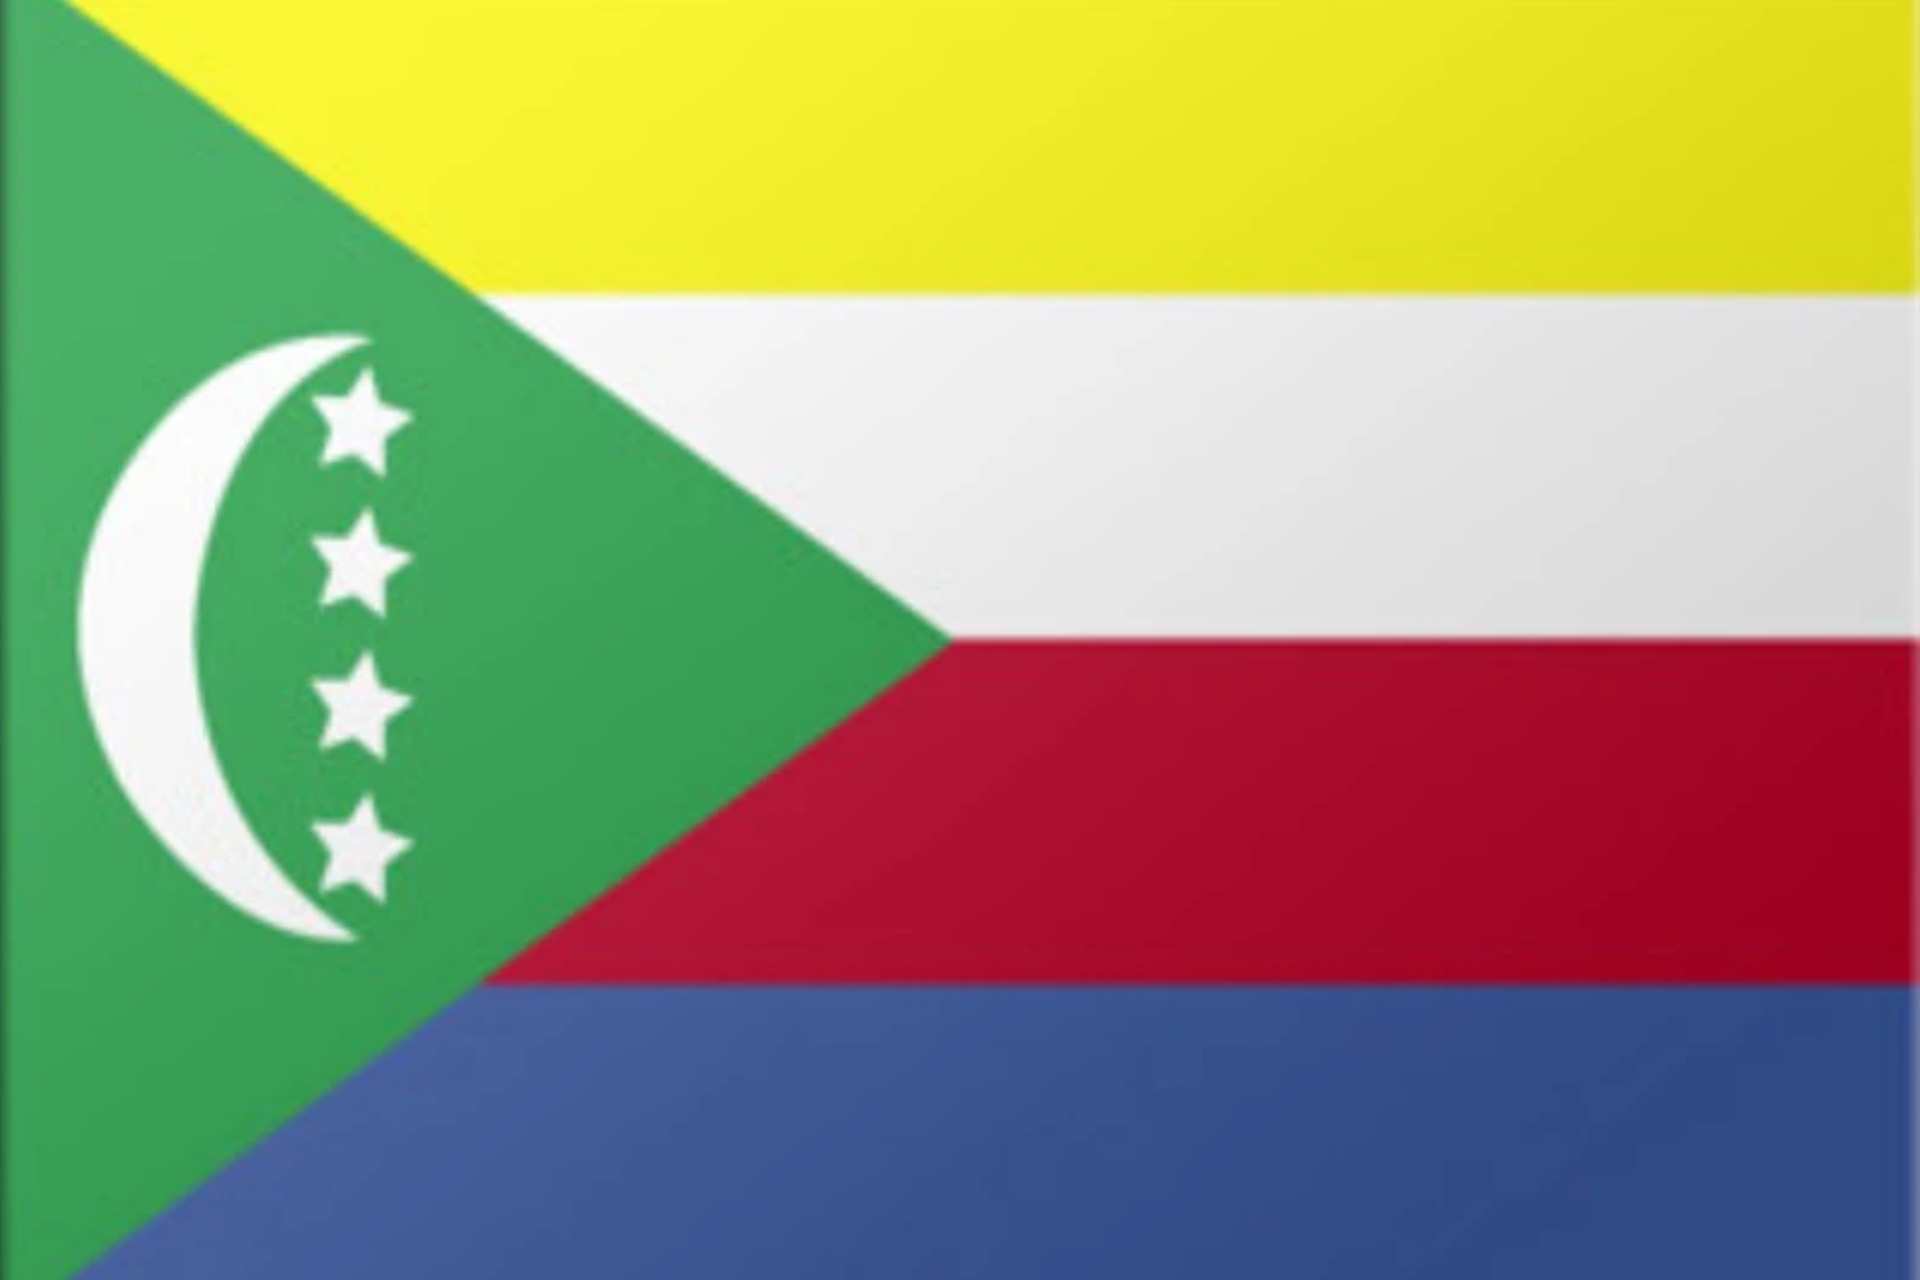 Comoros president